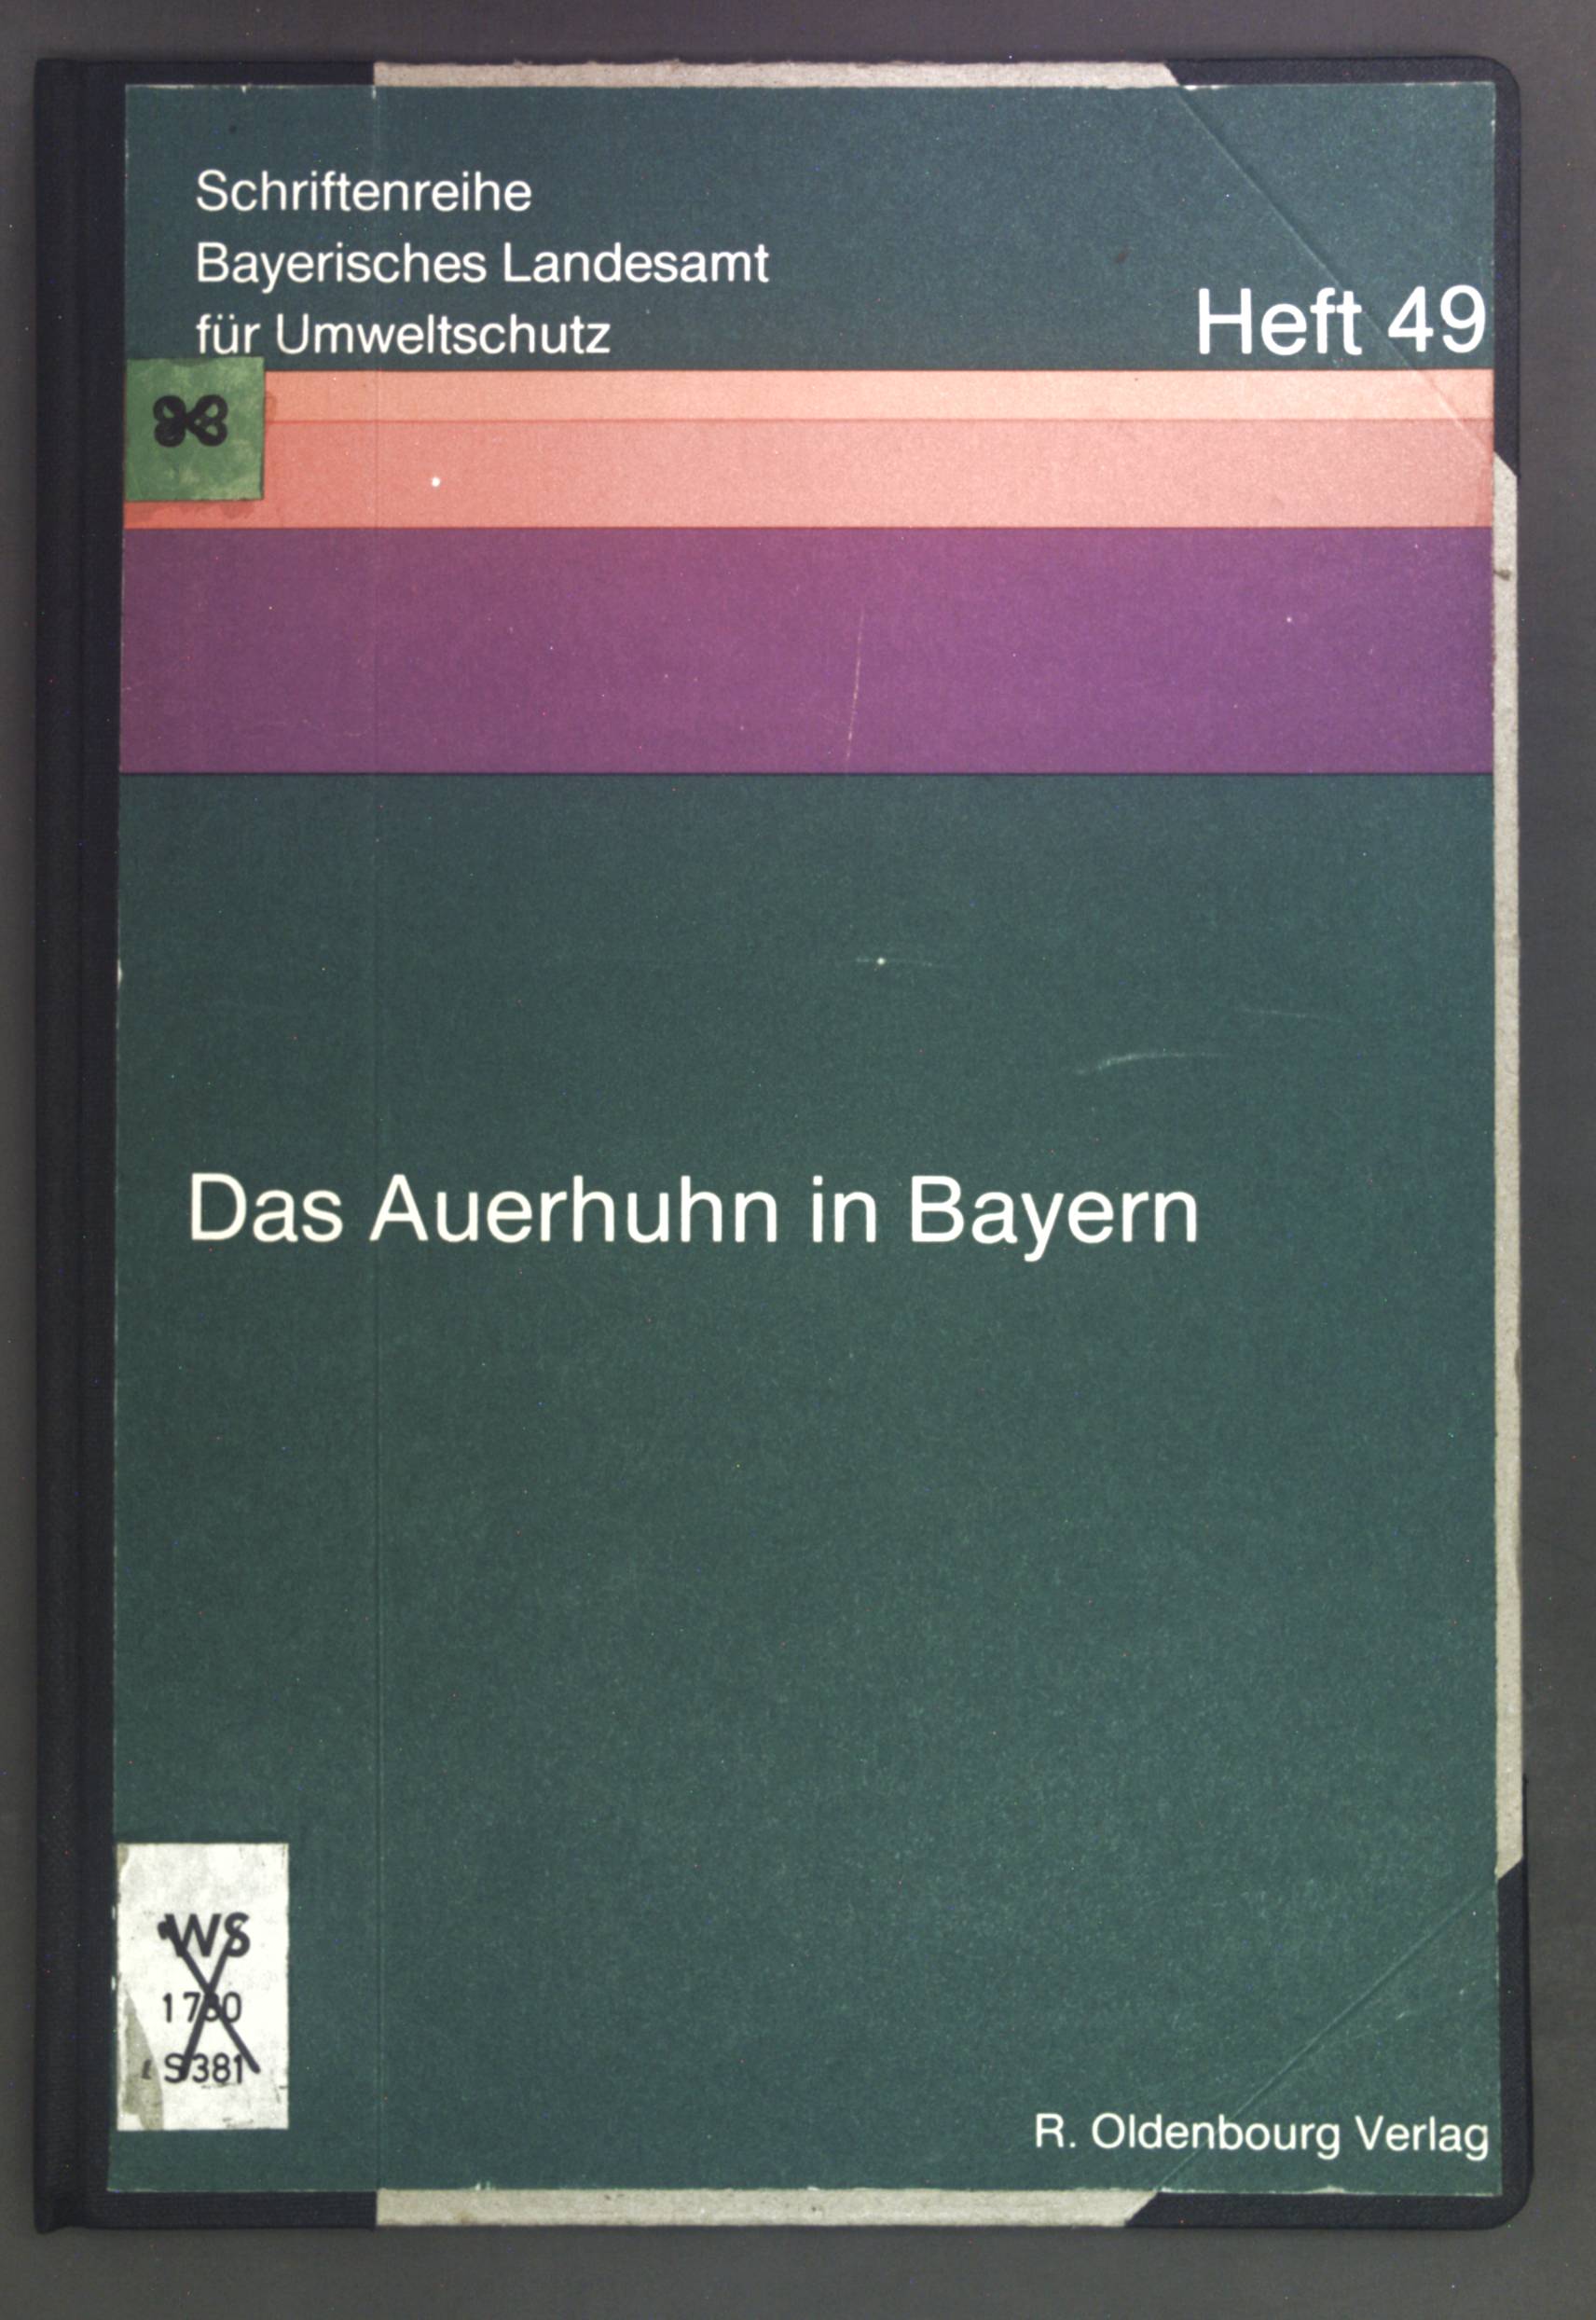 Das Auerhuhn in Bayern. Schriftenreihe ; H. 49 - Schröder, Wolfgang, Kurt Zeimentz und Rudolf Feldner